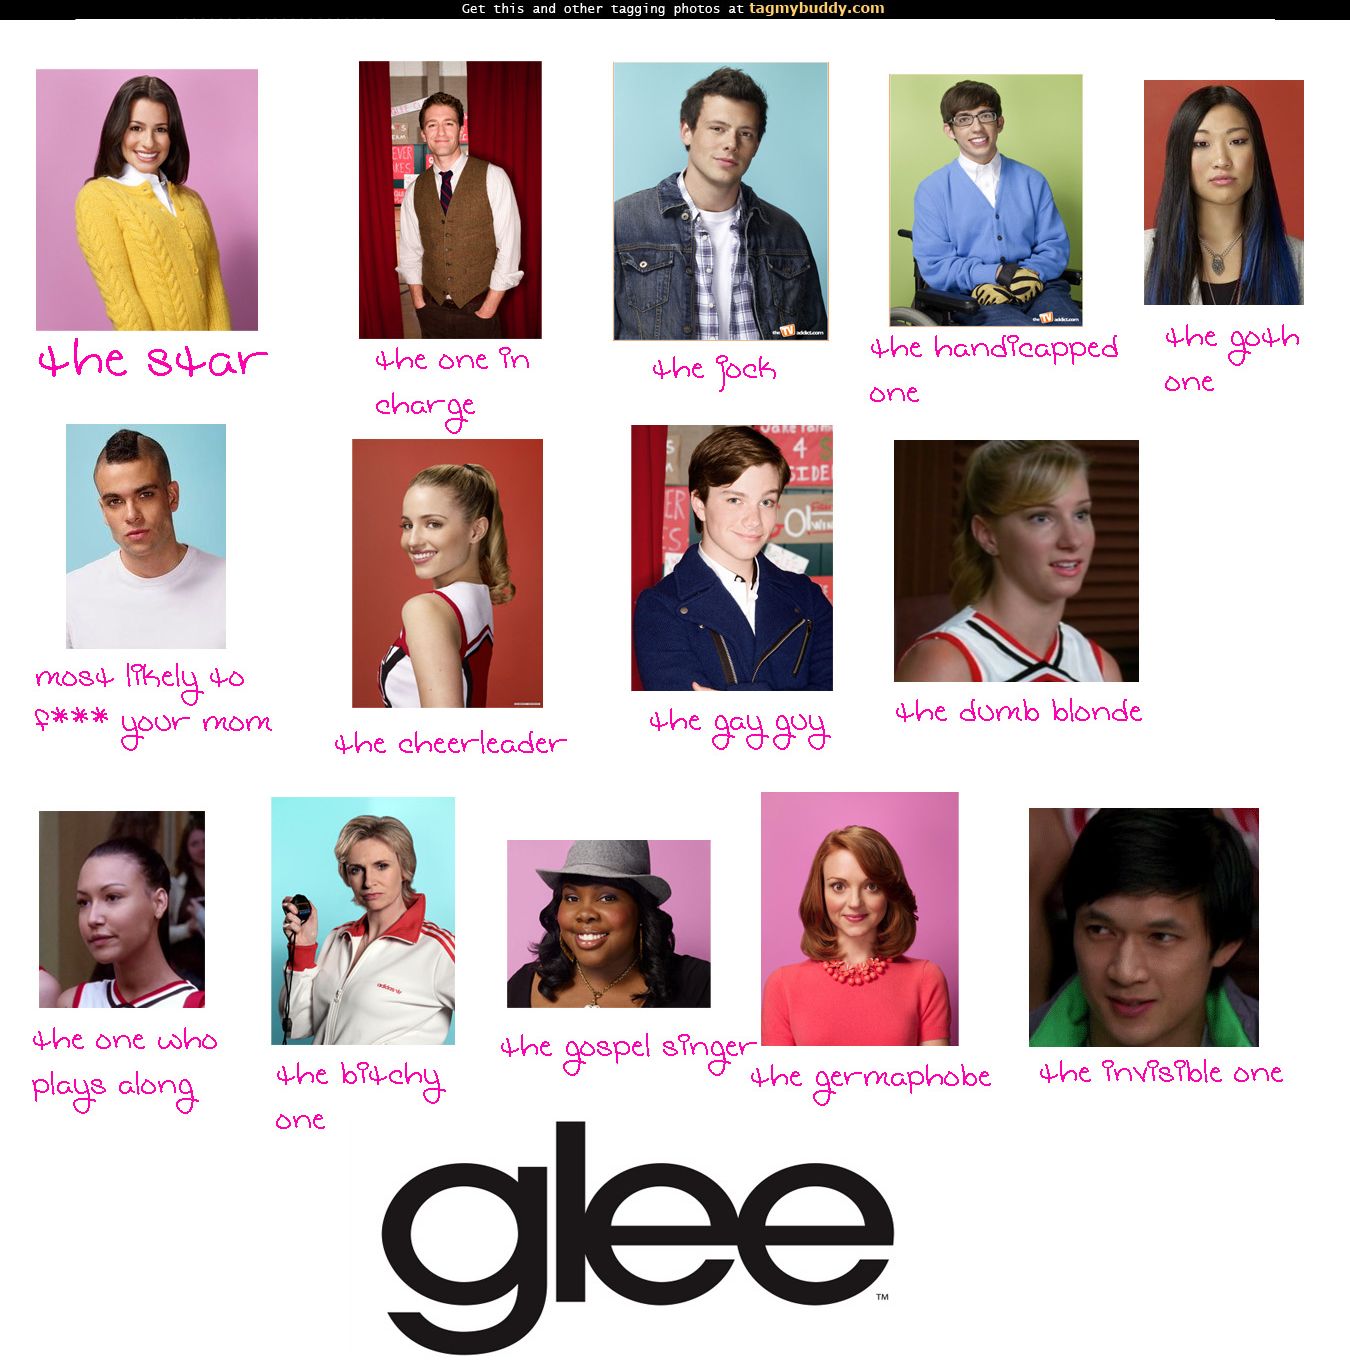 TagMyBuddy-Image-1184-Glee-characters